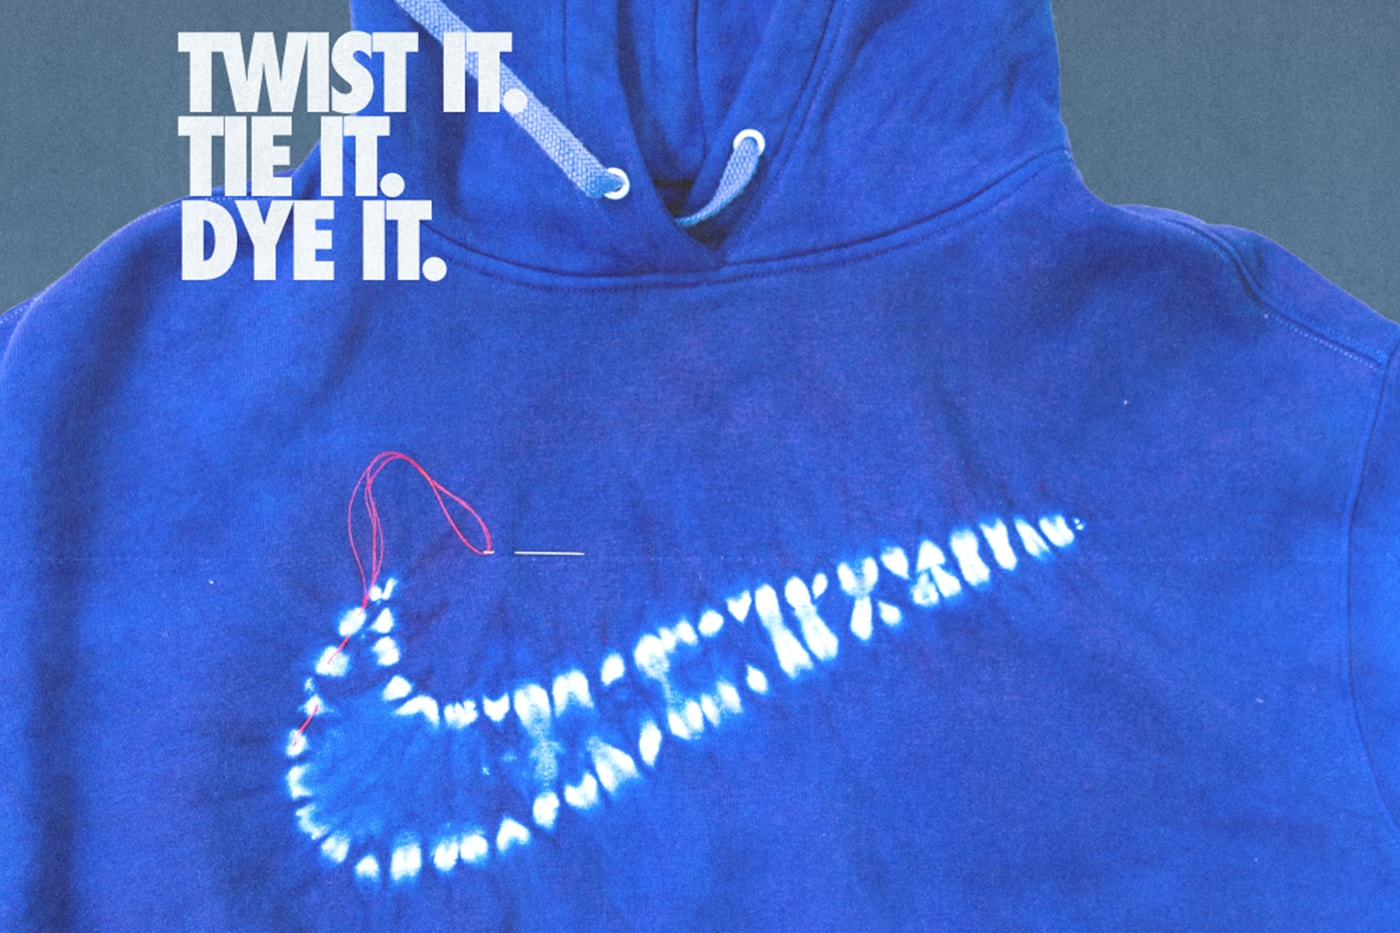 ナイキと染料メーカー リットが最新のコラボプロダクトとして絞り染めキットを発売 Nike Rit Shibori Tie-Dye Kit Release Info Date Buy Price 